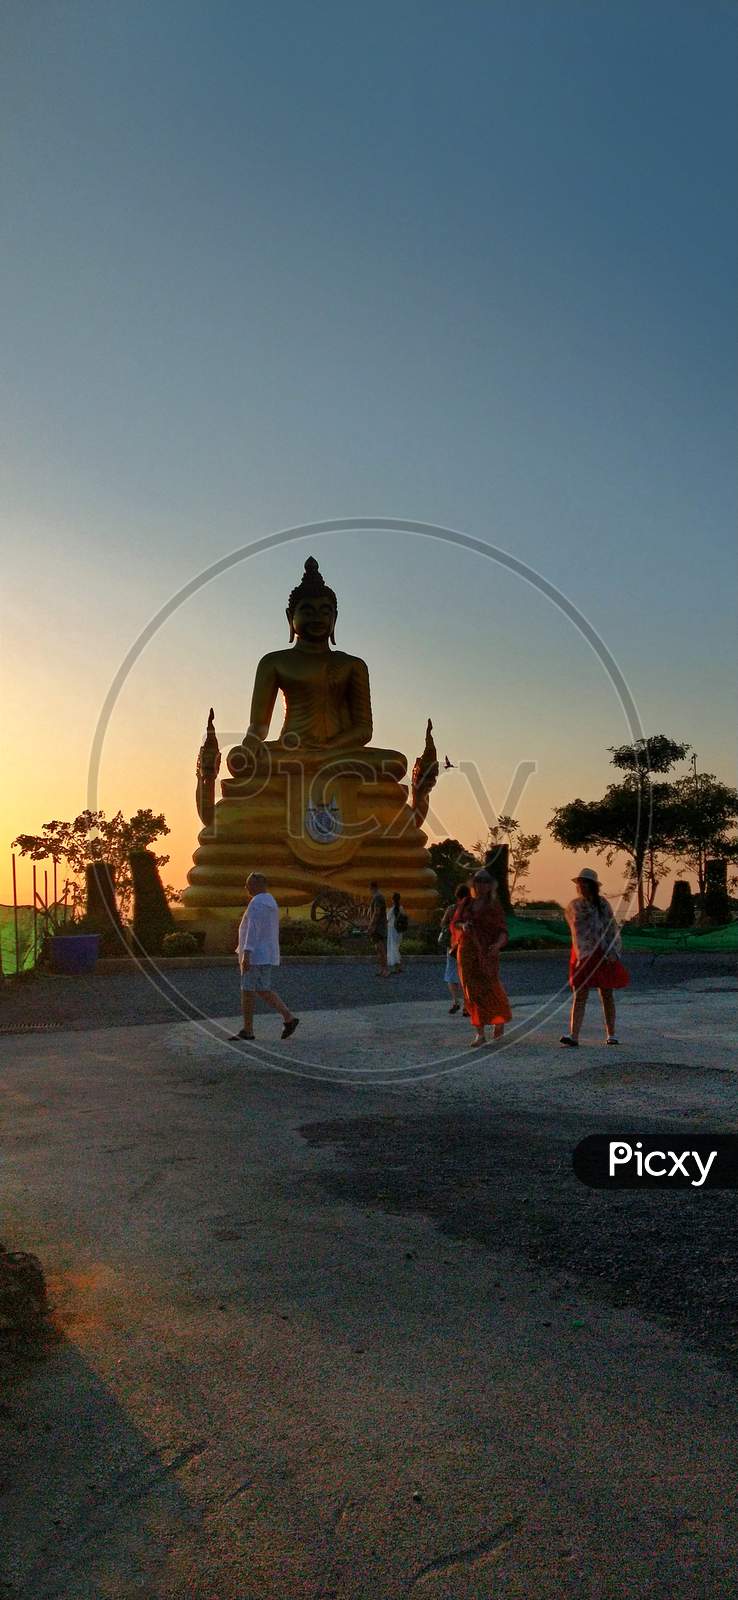 Big Buddha, Thailand